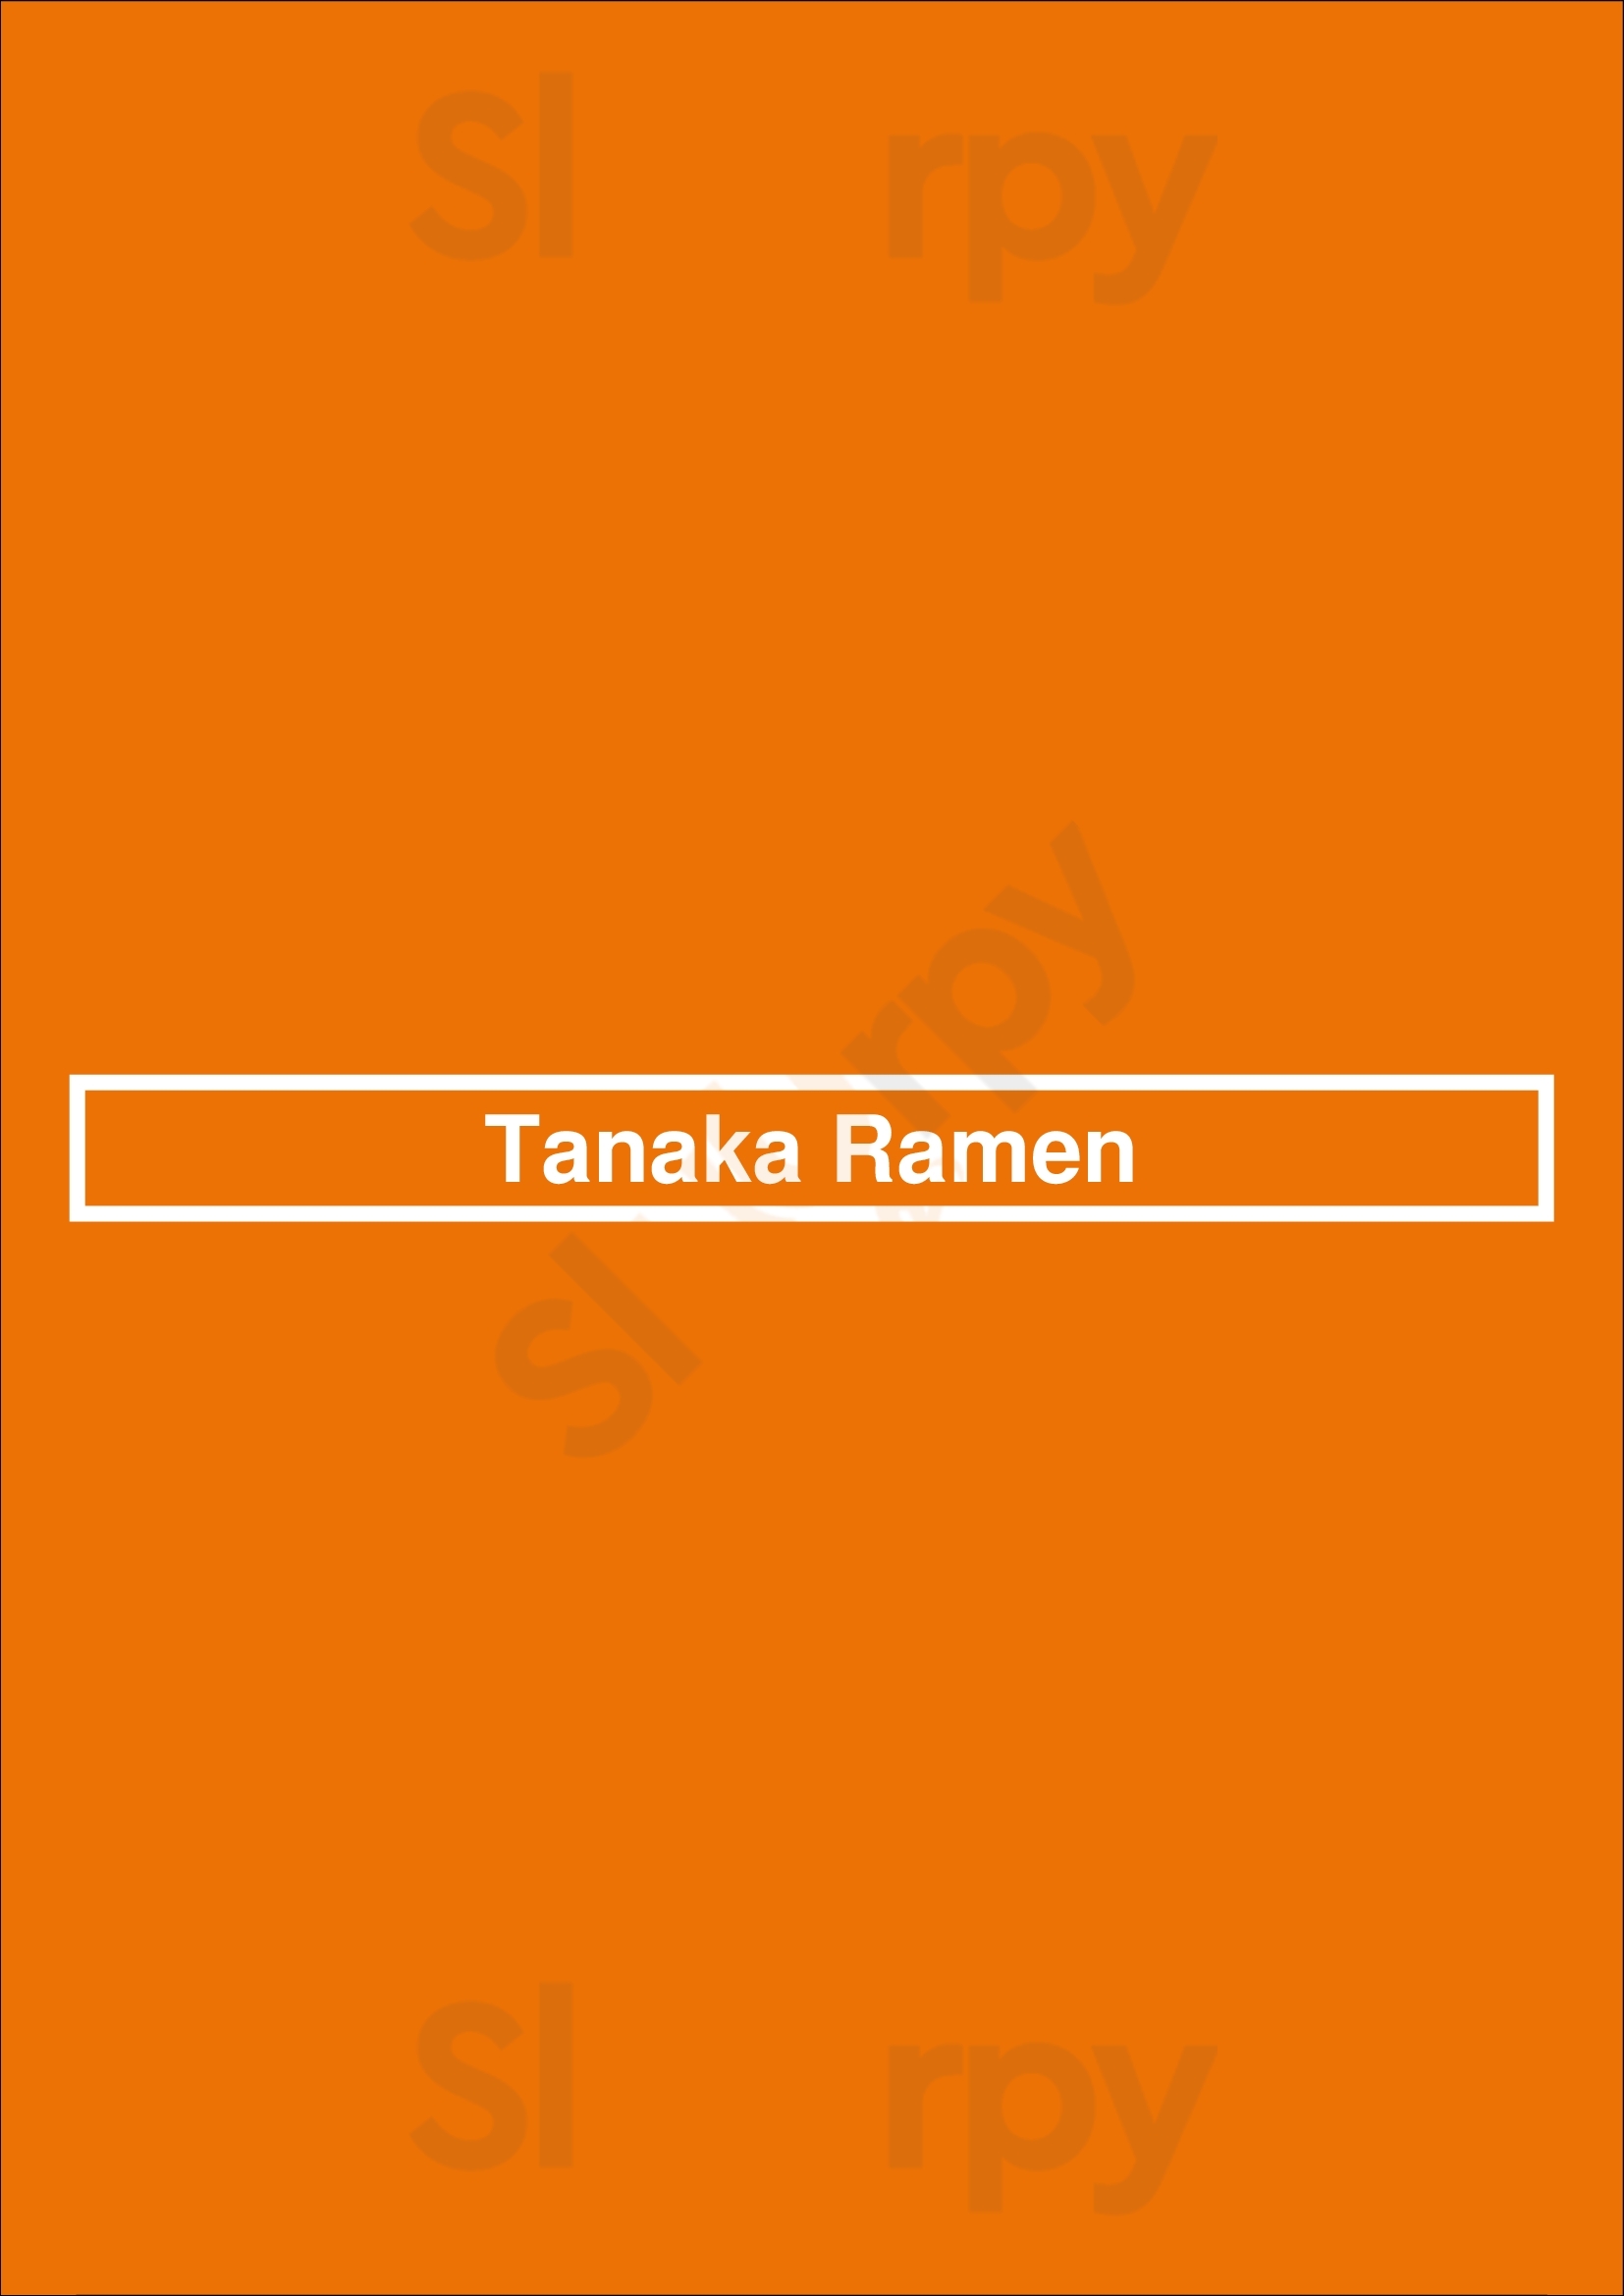 Tanaka Ramen Chicago Menu - 1